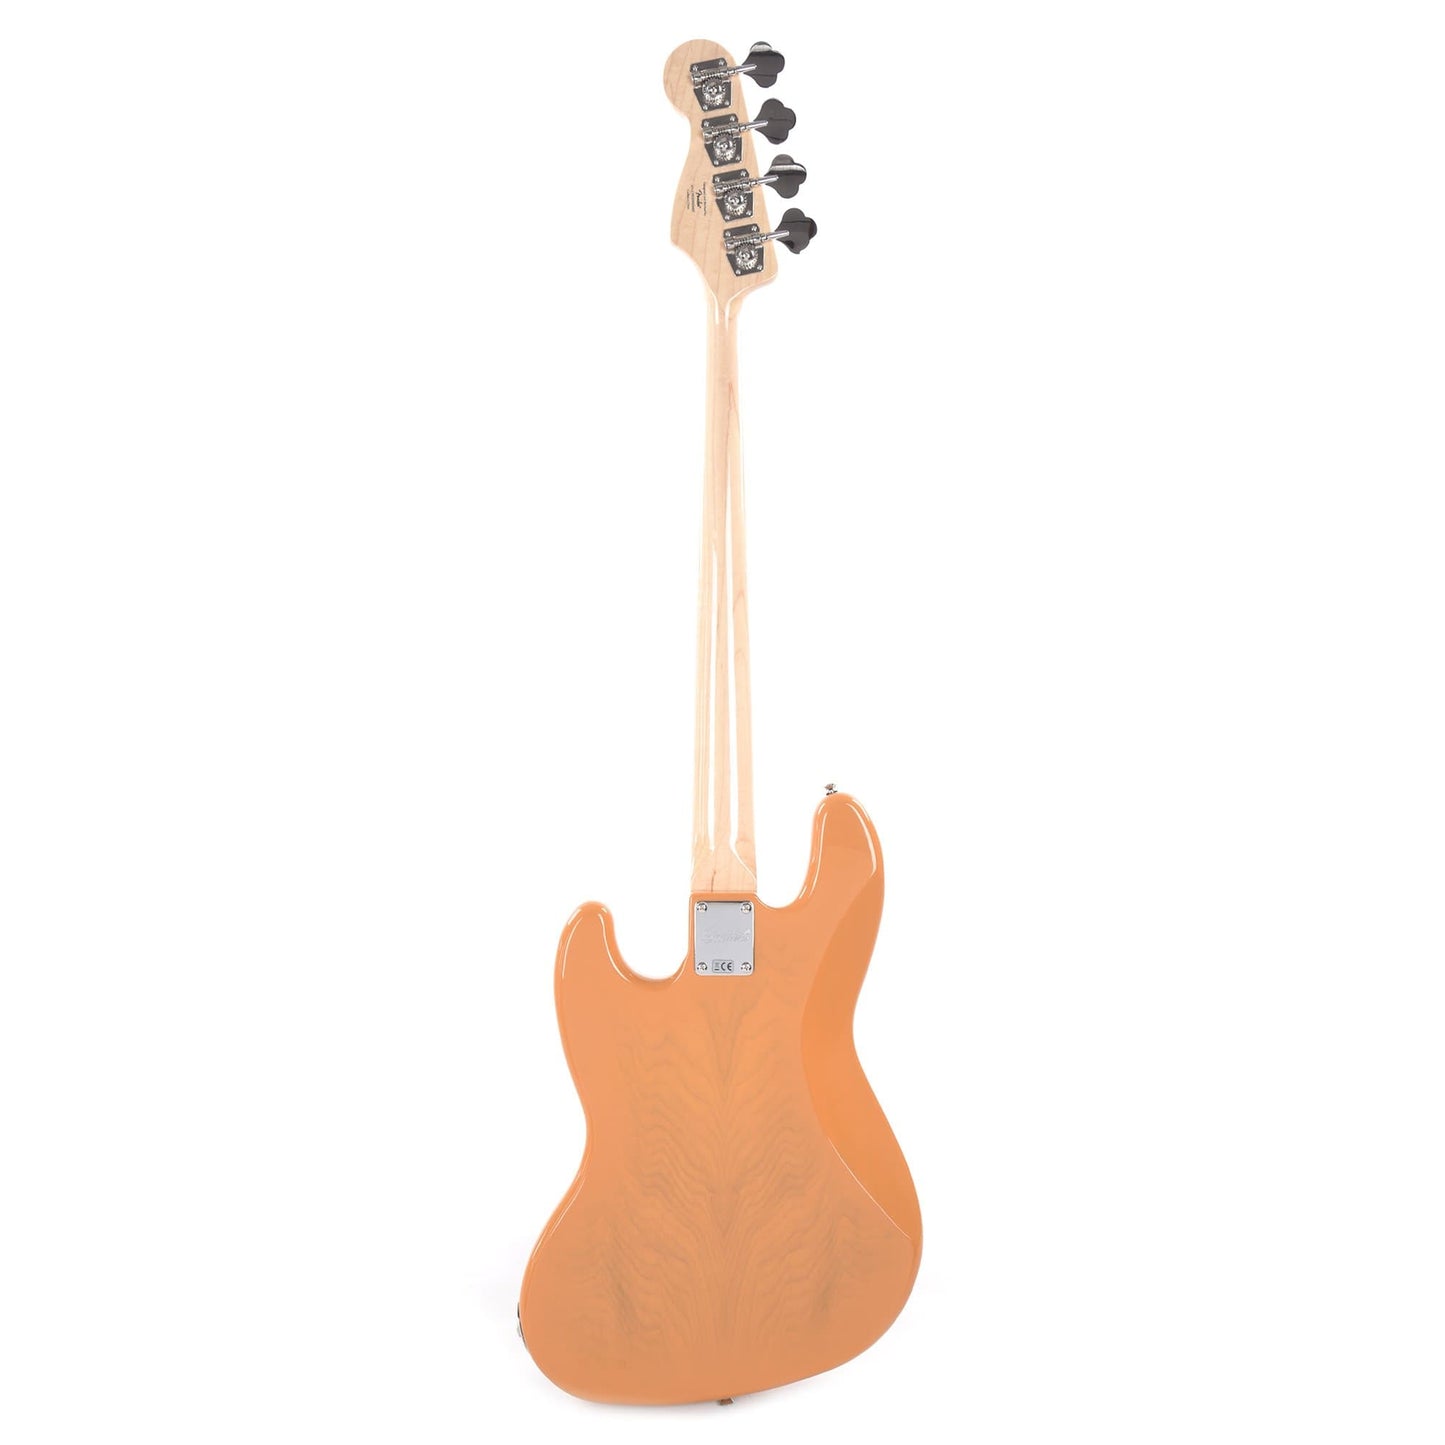 Squier Paranormal Jazz Bass '54 Butterscotch Blonde Bass Guitars / 4-String